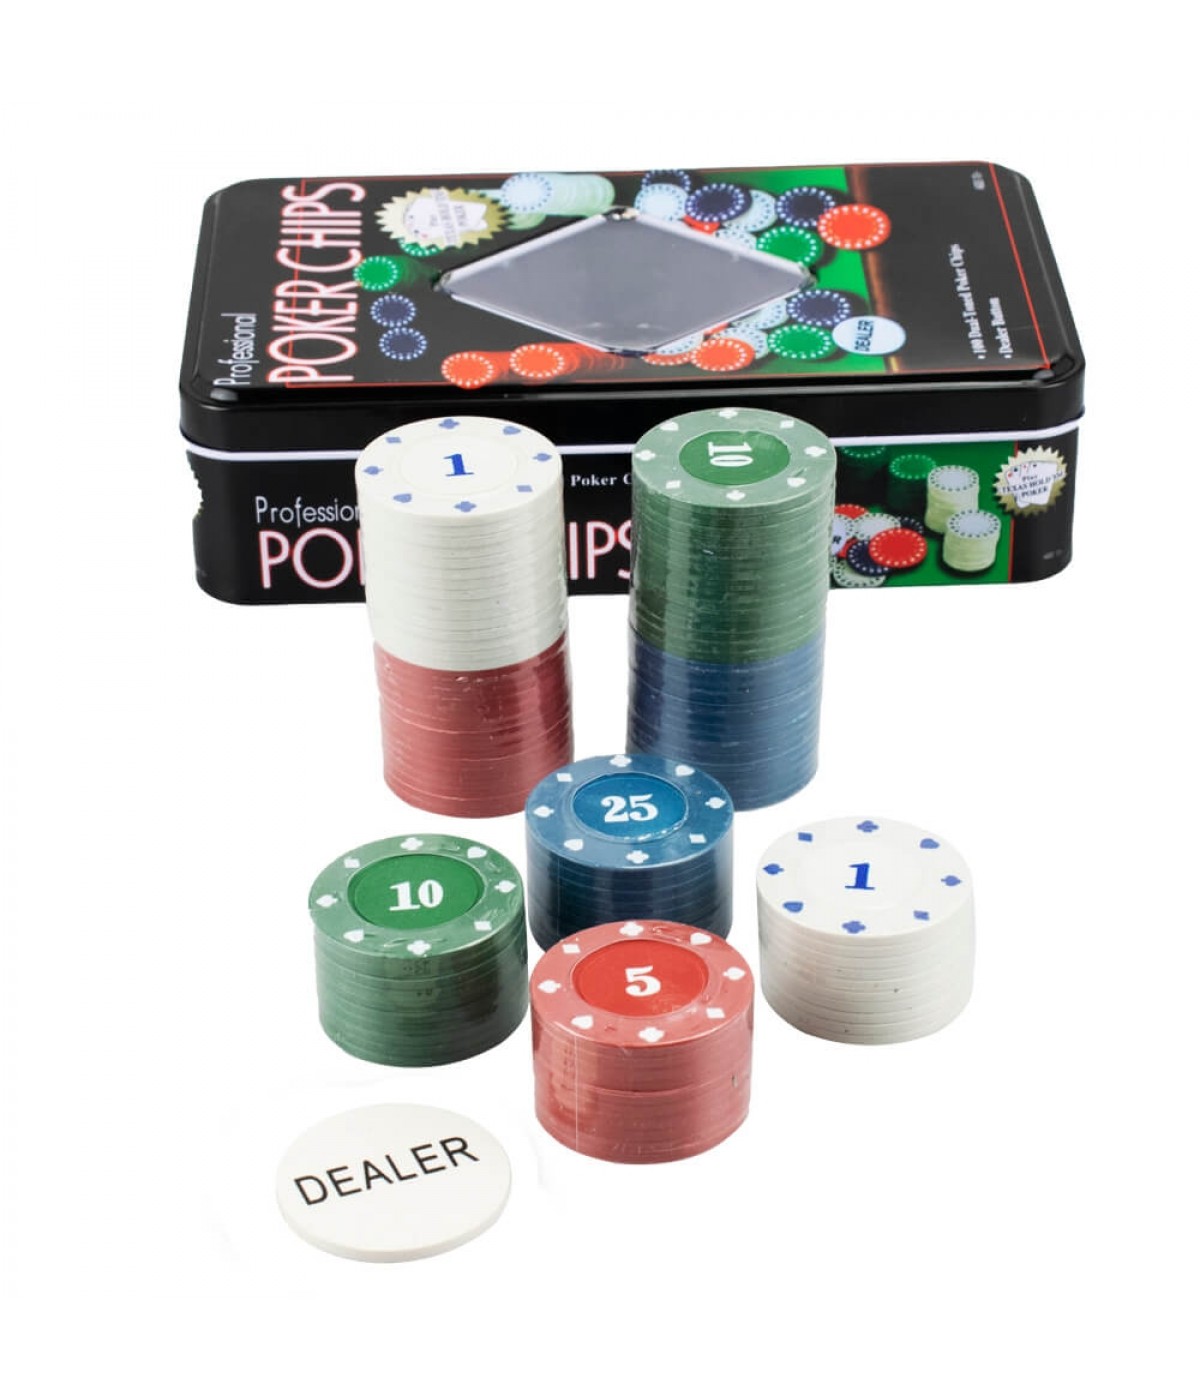 Como se joga pôquer?